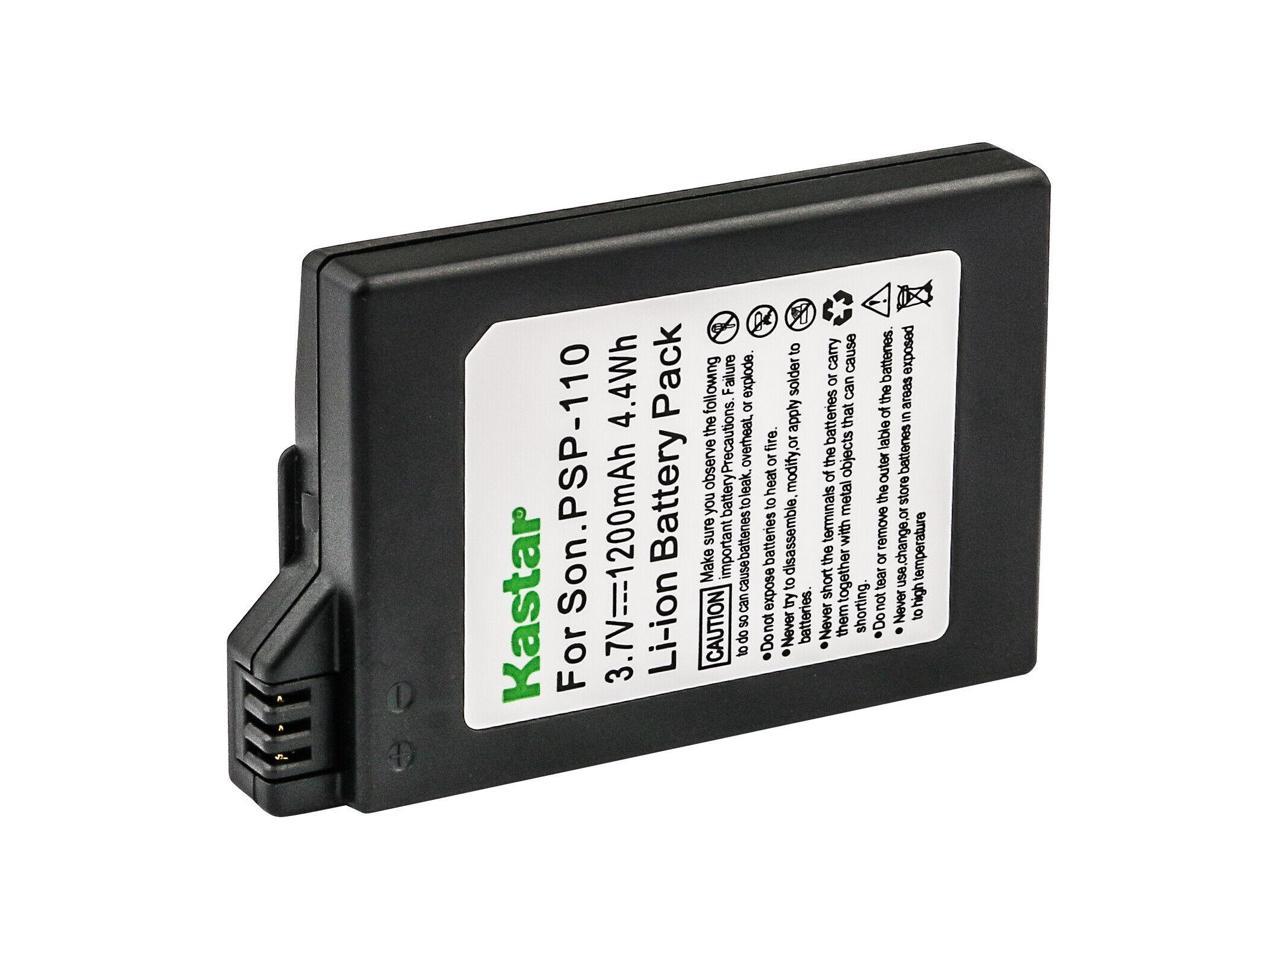 Kastar 1-Pack Battery Replacement for Sony PSP-S110, PSPS110 Battery, Sony  PSP-3001, PSP-3002, PSP-3003, PSP-3004, PSP-3005, PSP-3006, PSP-3007, PSP-3008,  PSP-3009, PSP-3010, PSP-Lite, PSP-Silm 